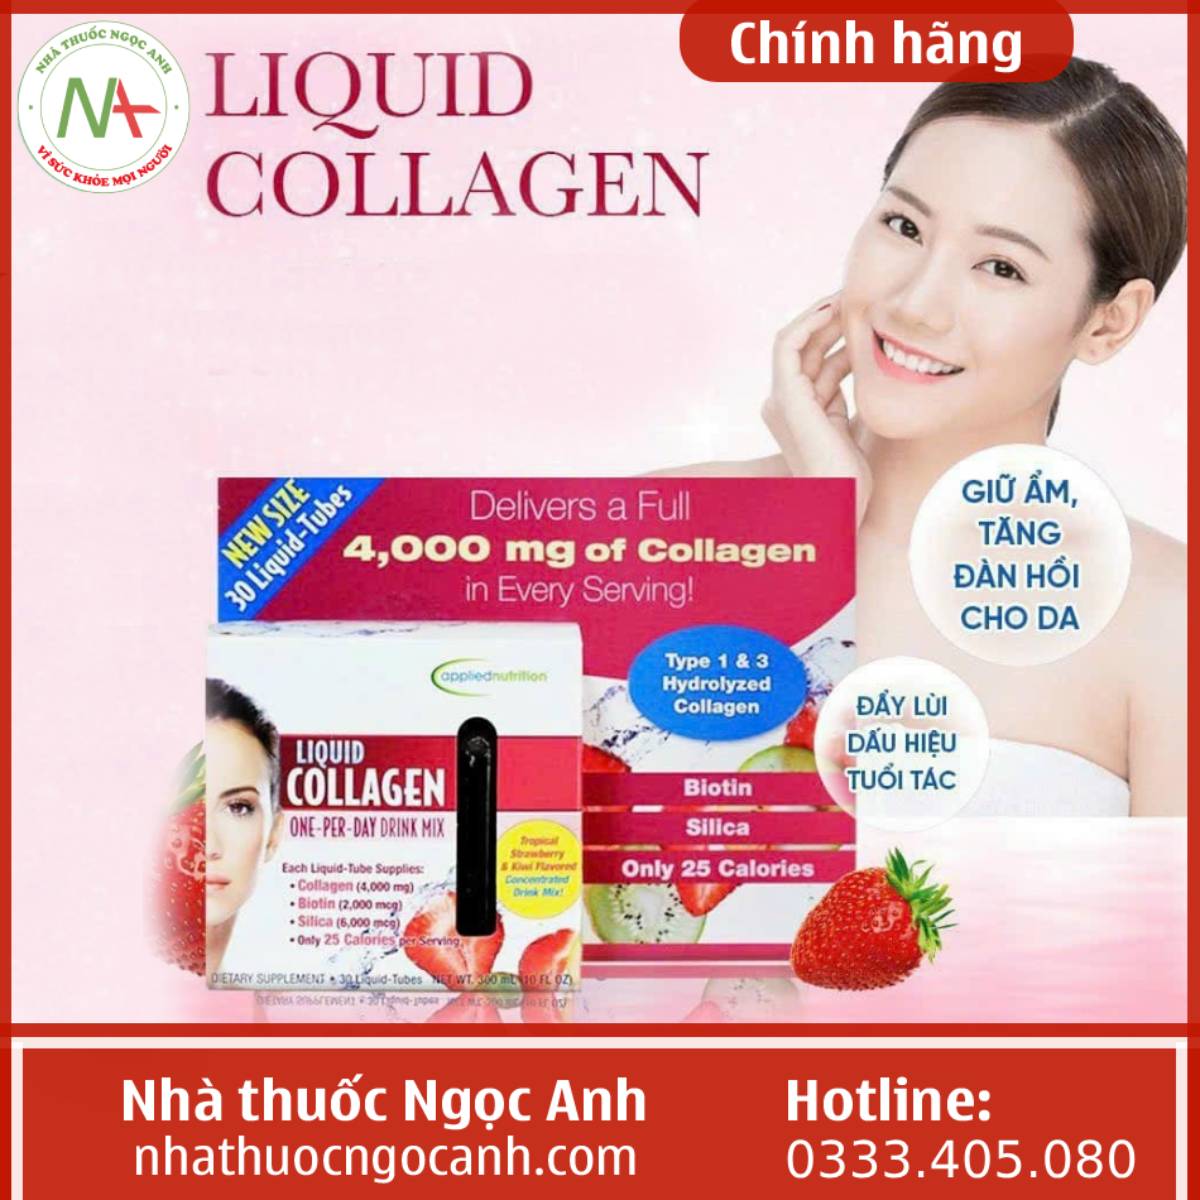 Liquid Collagen One-Per-Day Drink Mix